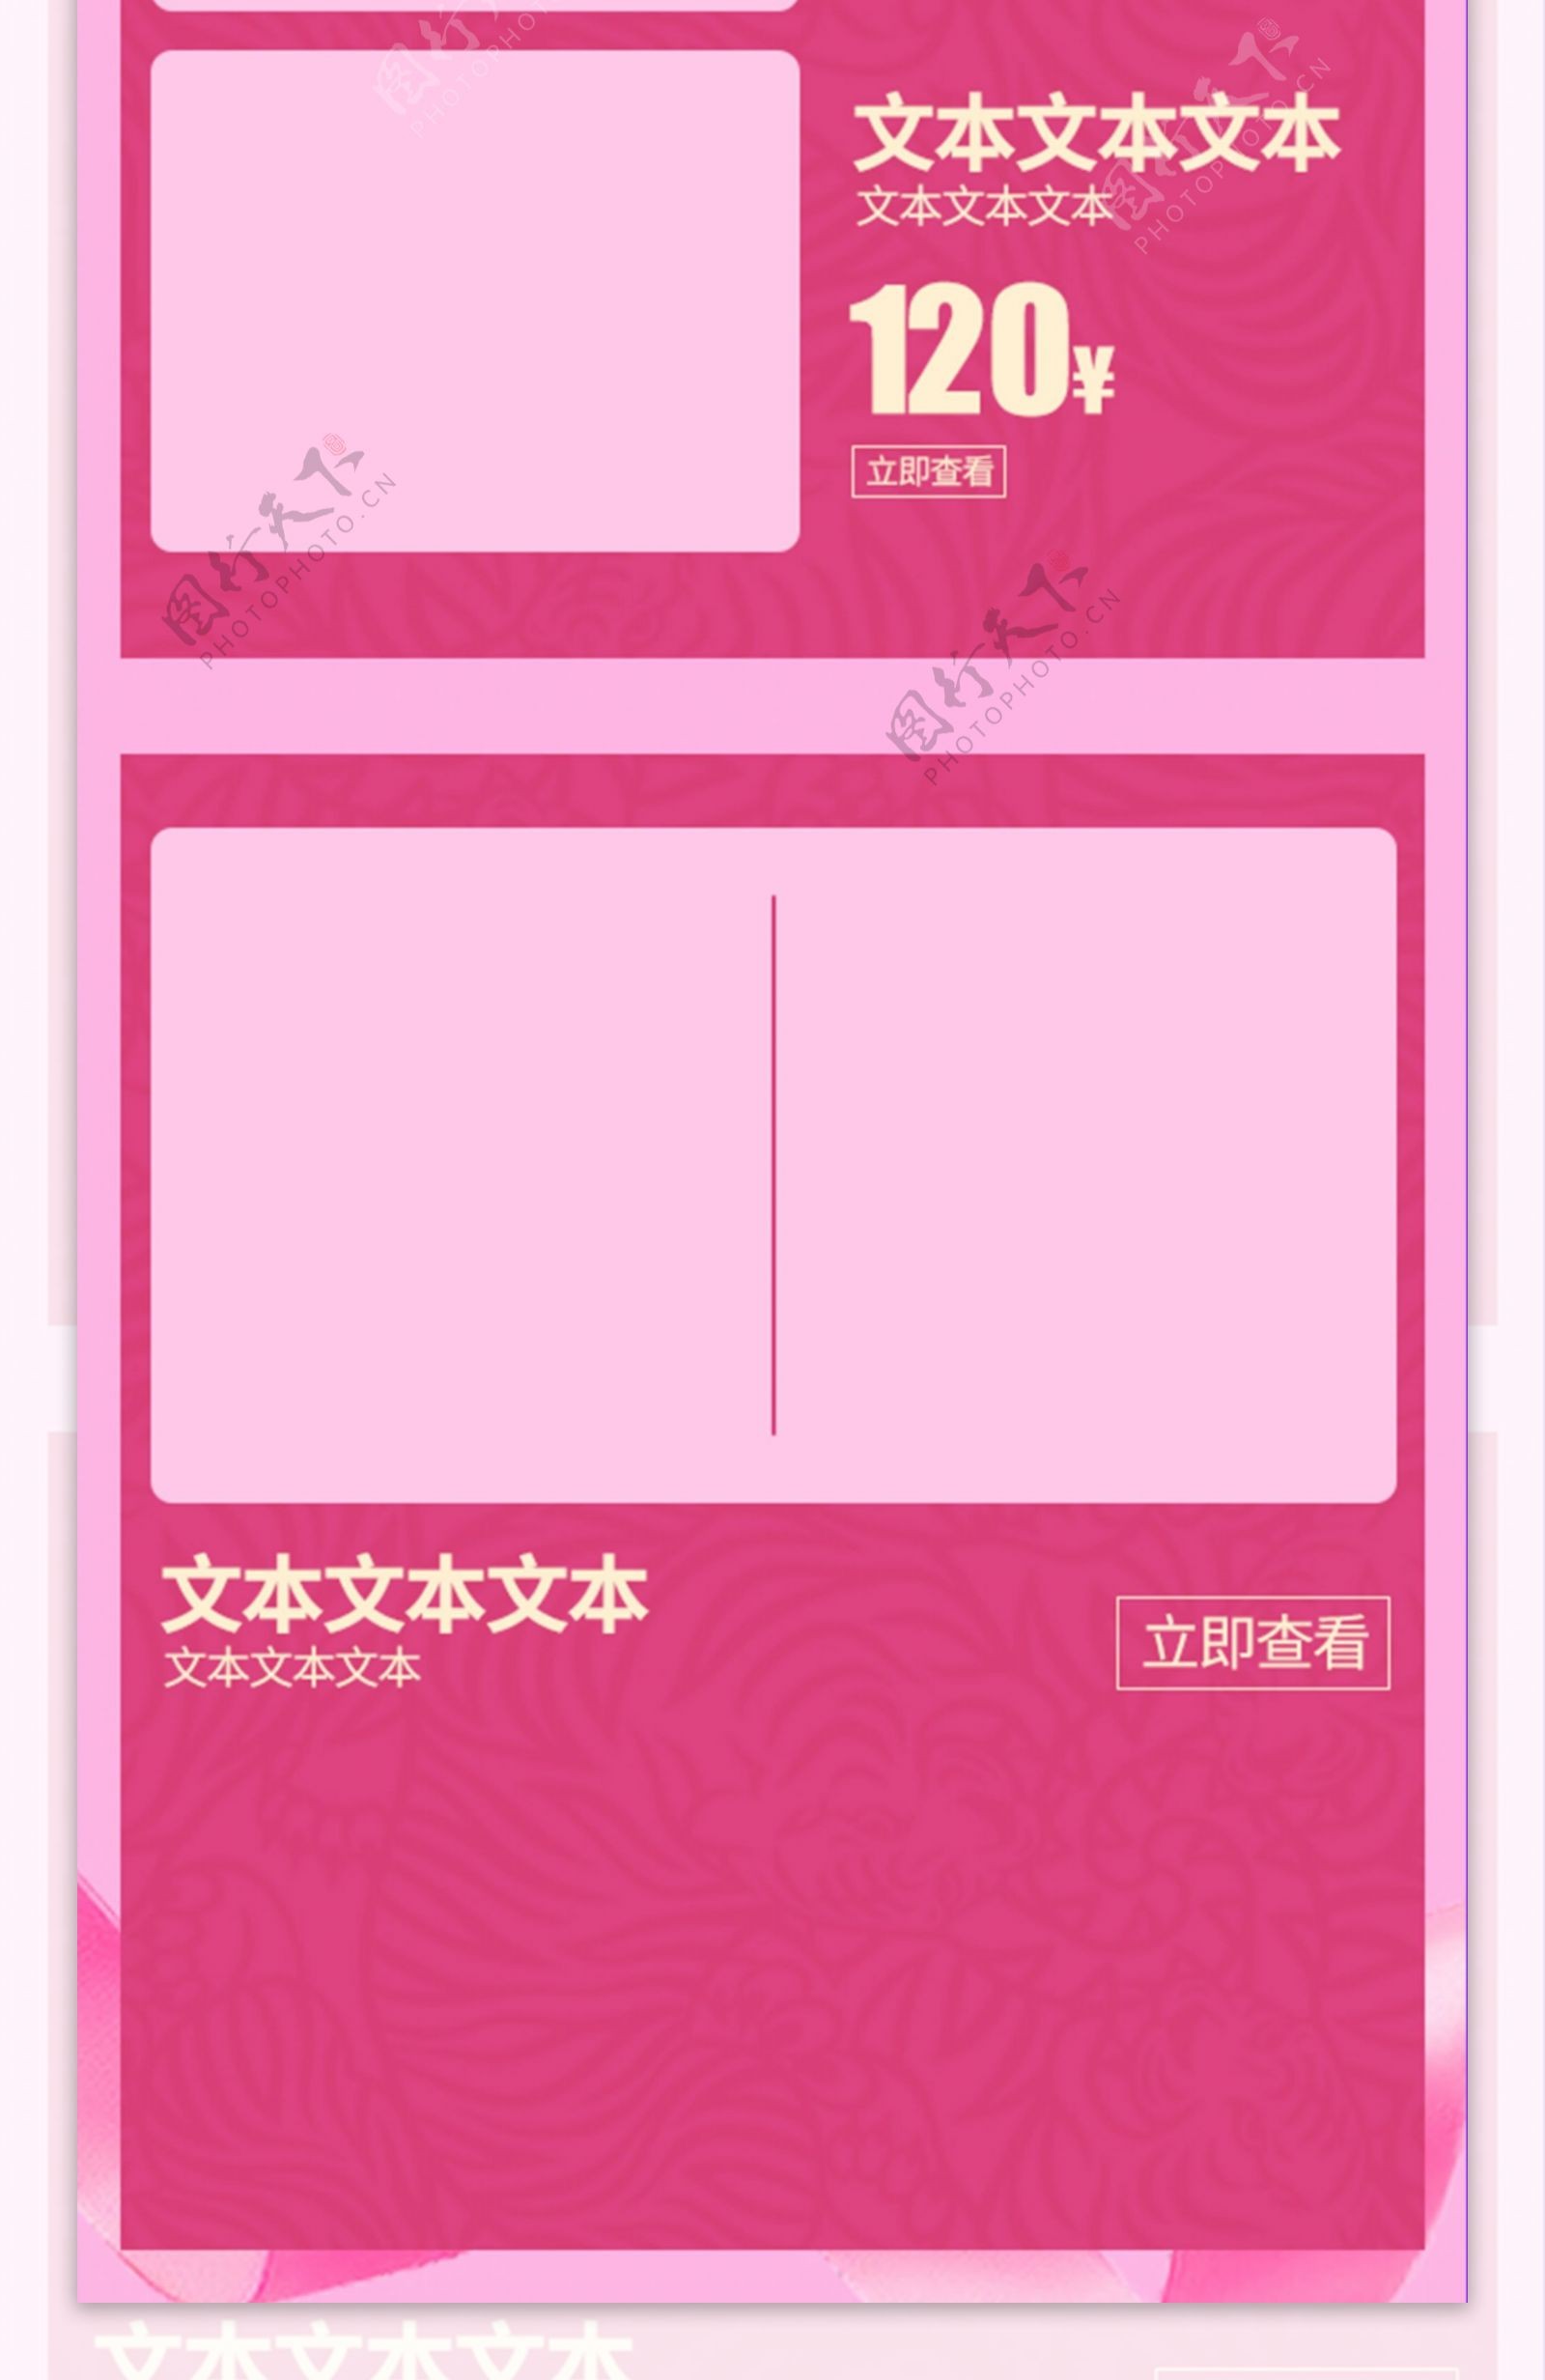 电商淘宝化妆品面霜粉色花朵情人节首页模板